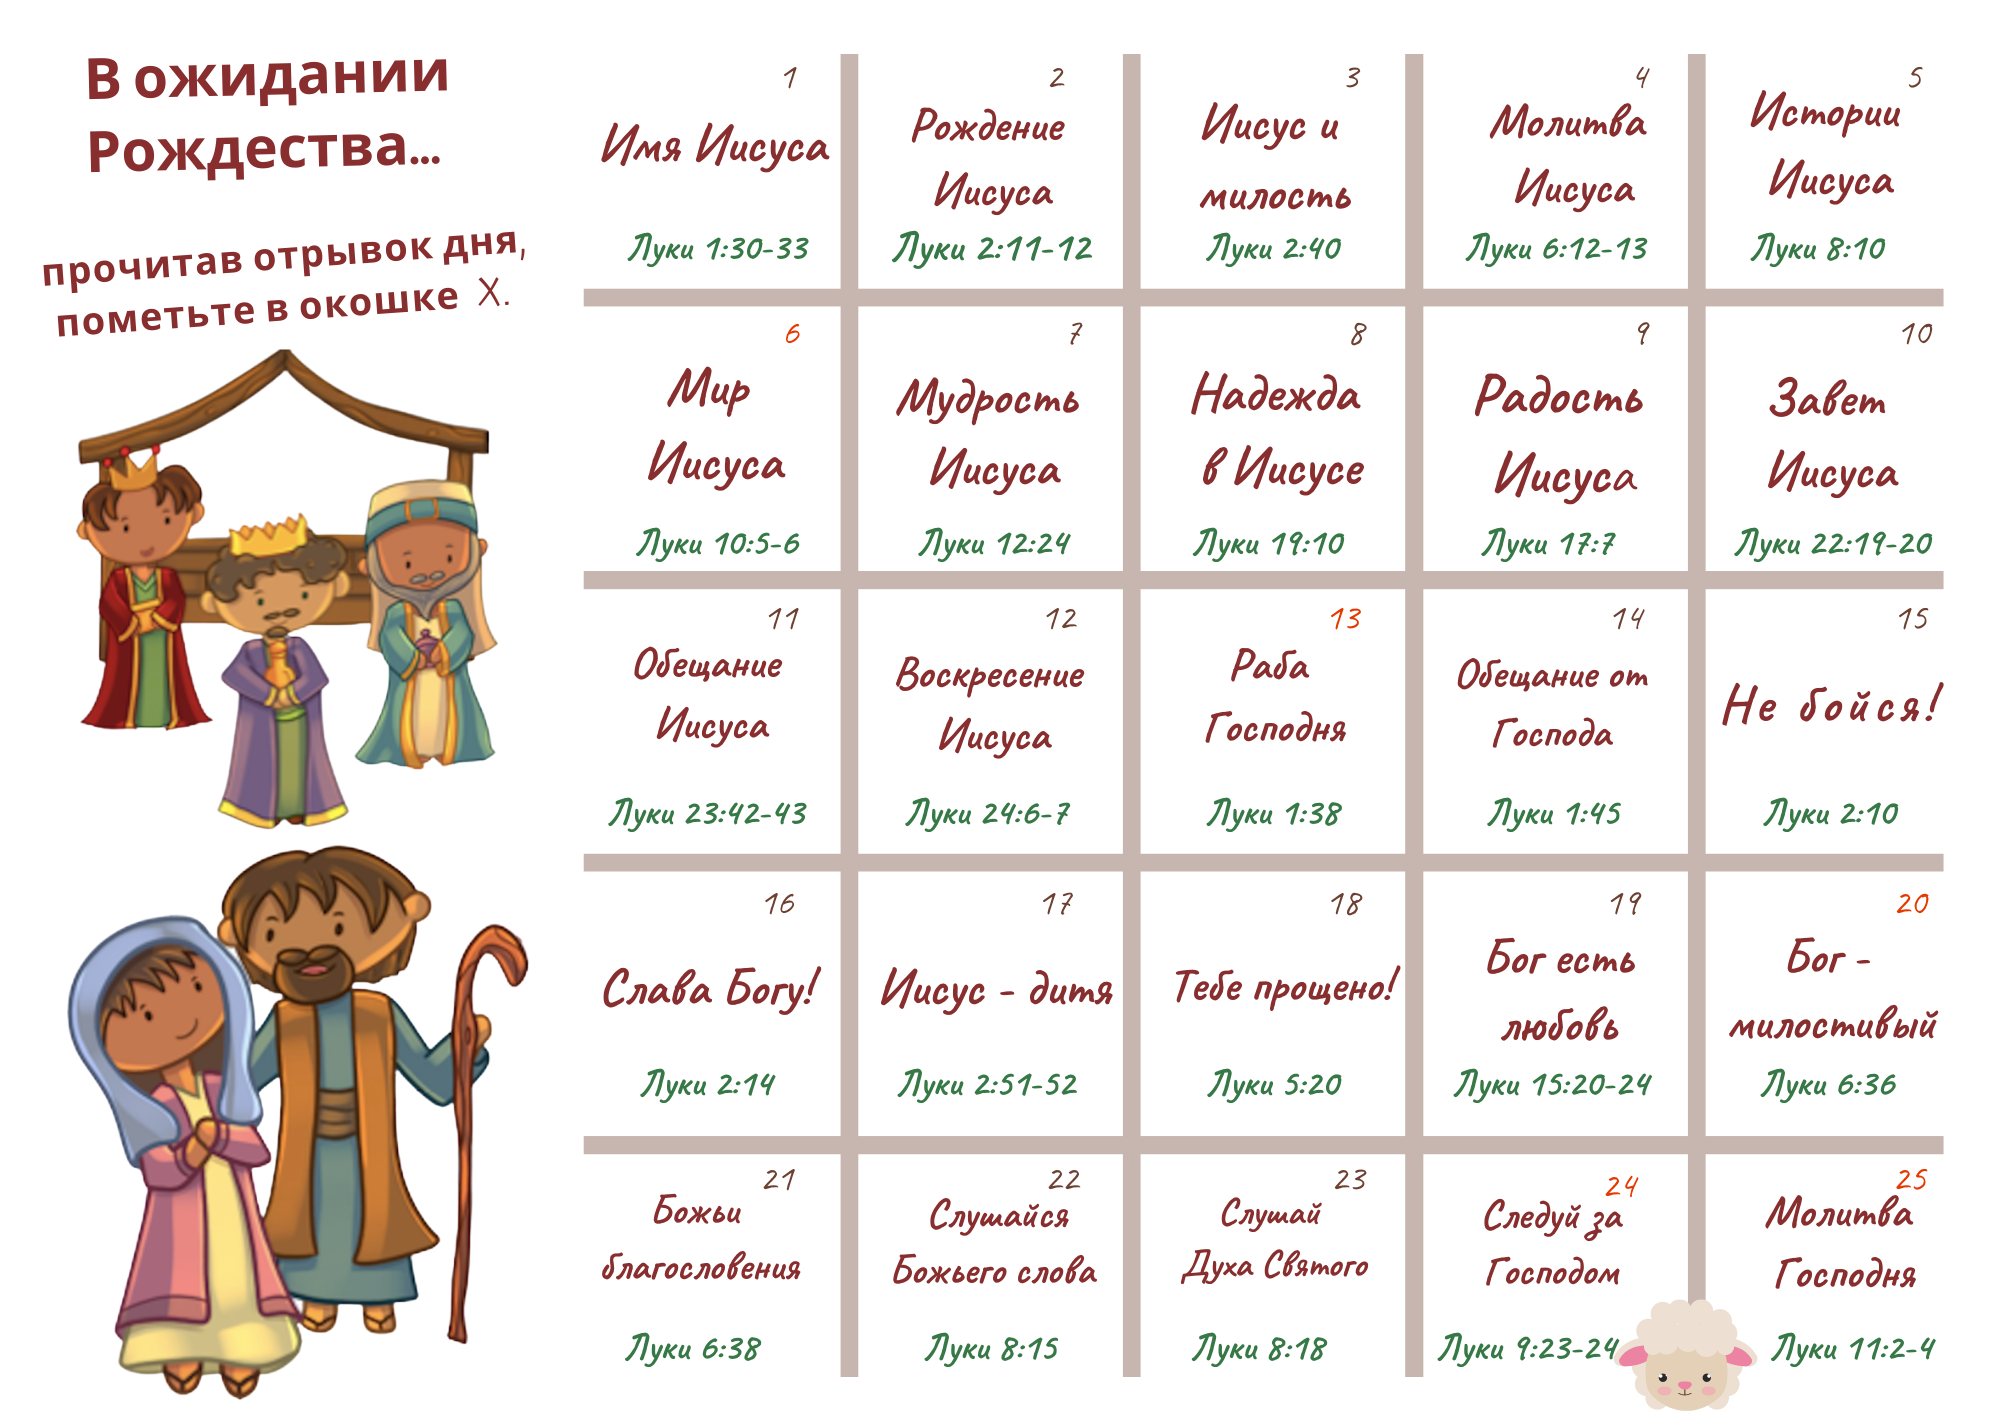 О праздновании Рождества и расписании Литургий